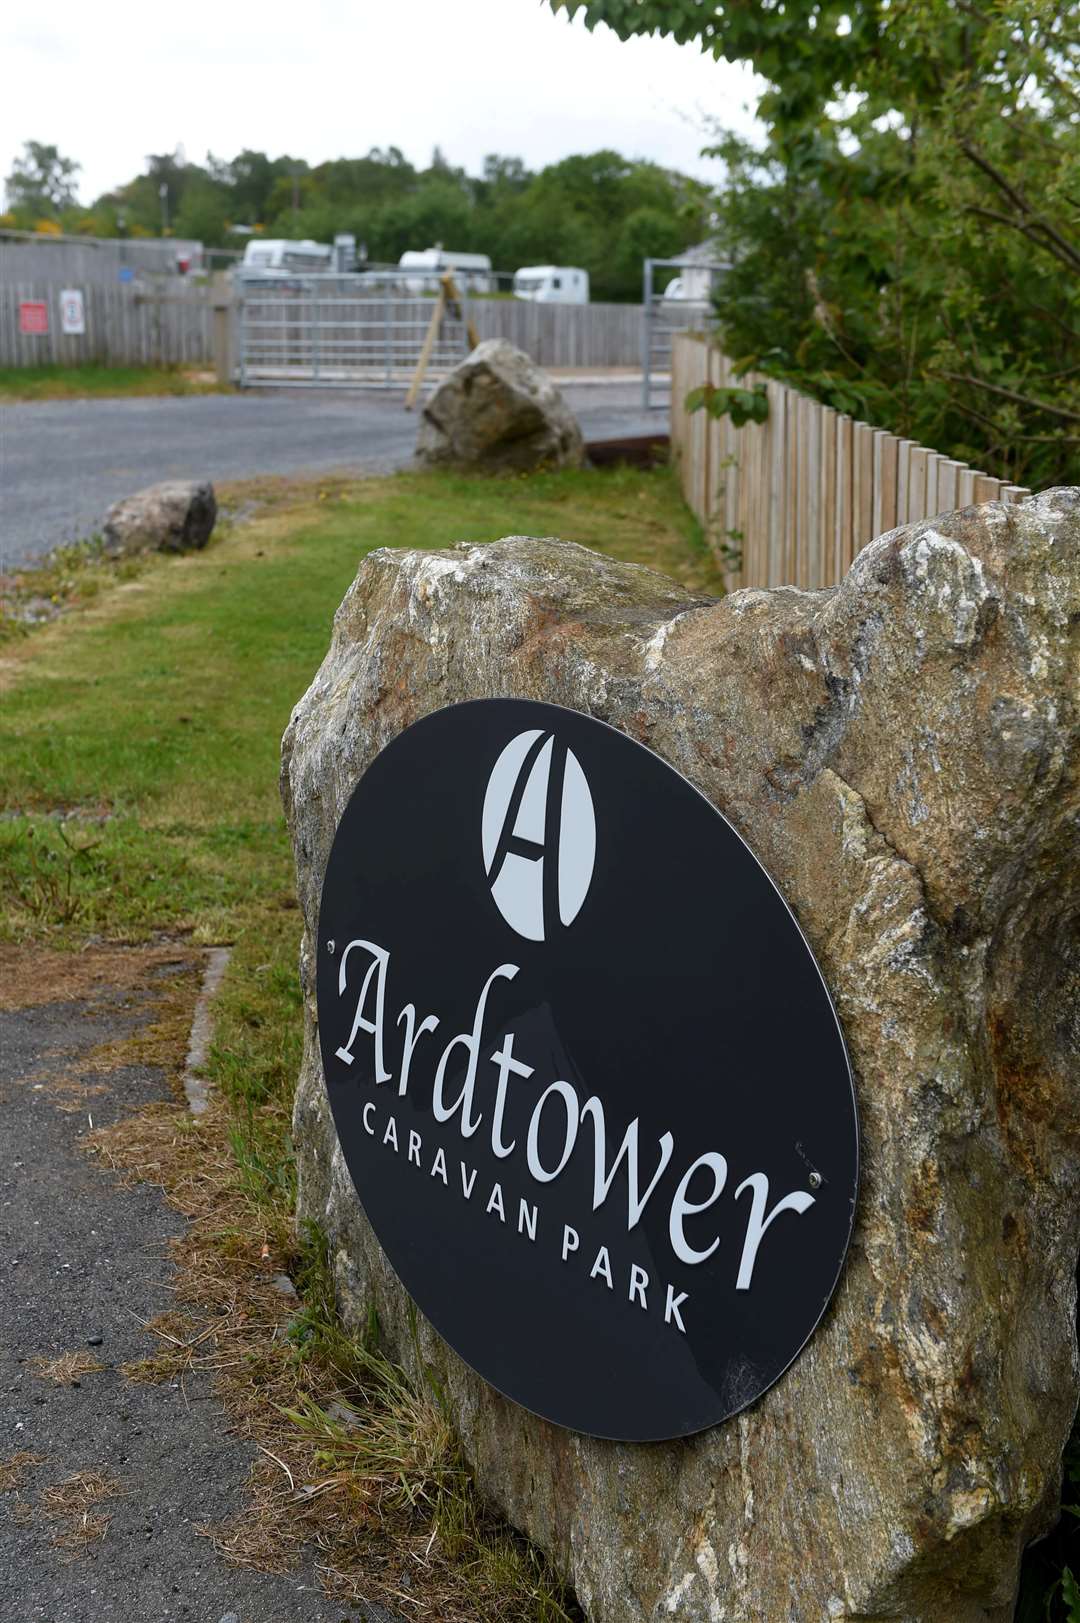 Ardtower Caravan Park, Culloden Road, Inverness.